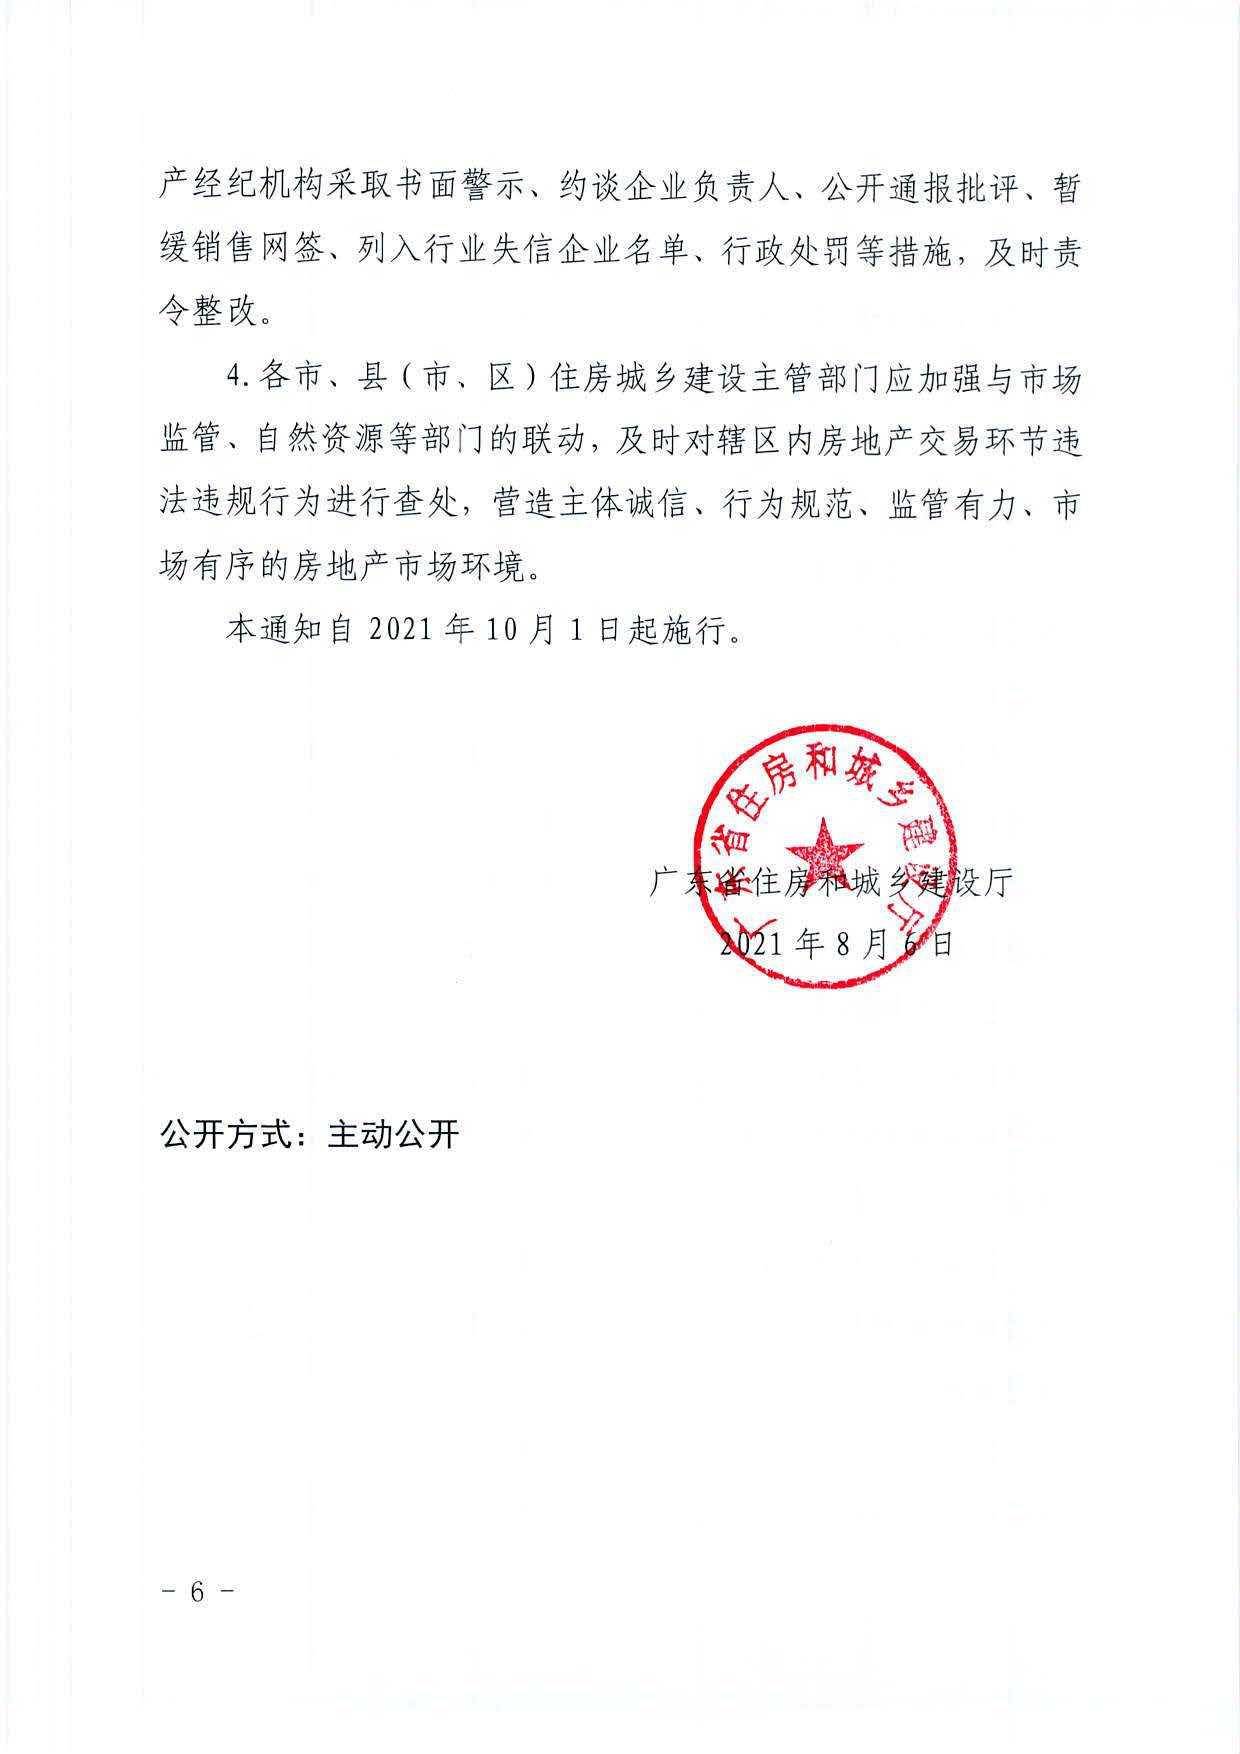 买房更透明 广州官方发文 新房备案价要求现场公示